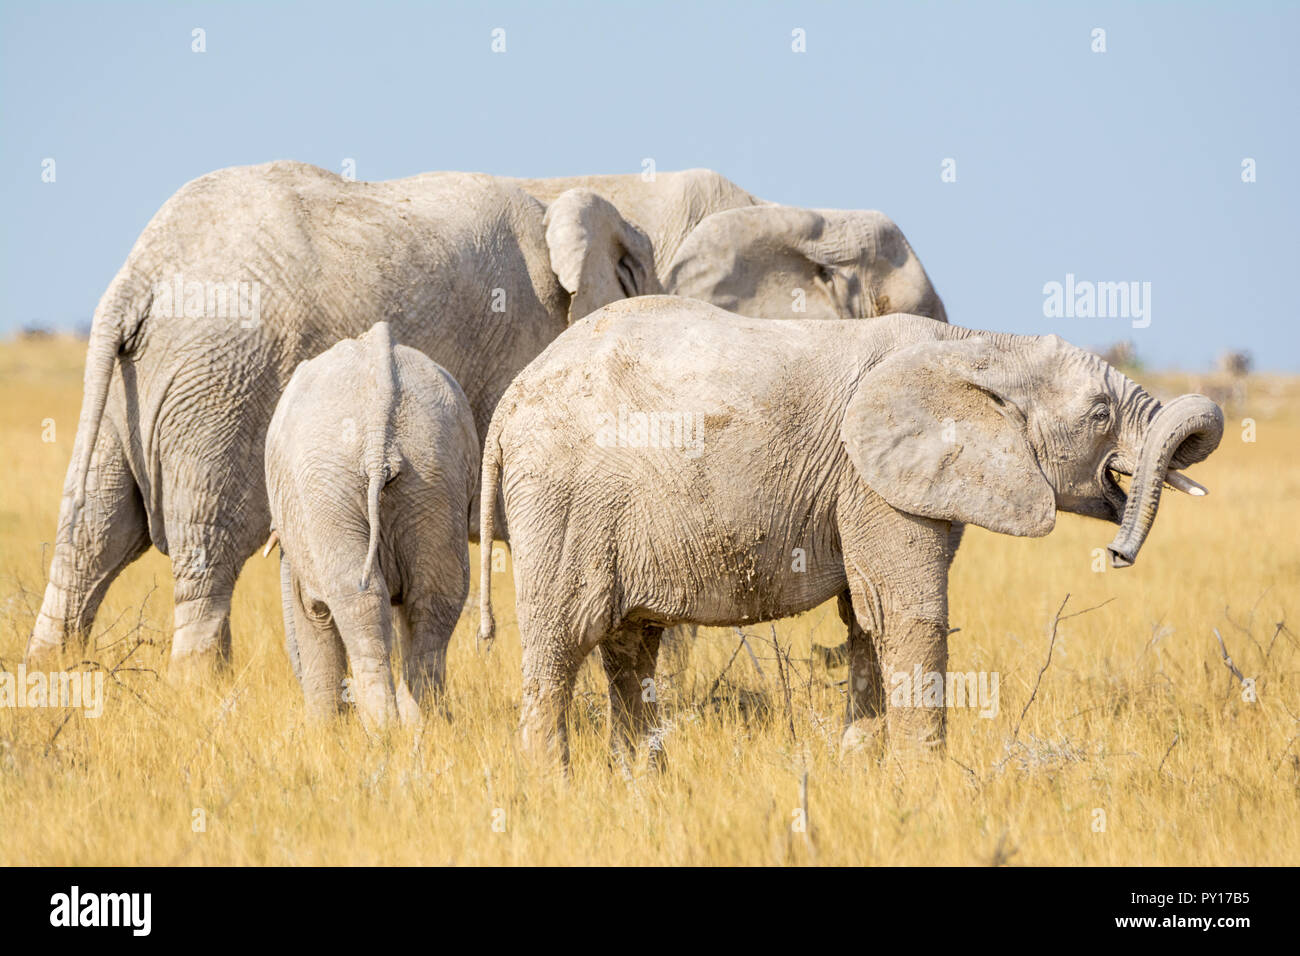 savanna elephant, Loxodonta africana, Etosha National Park, Namibia Stock Photo